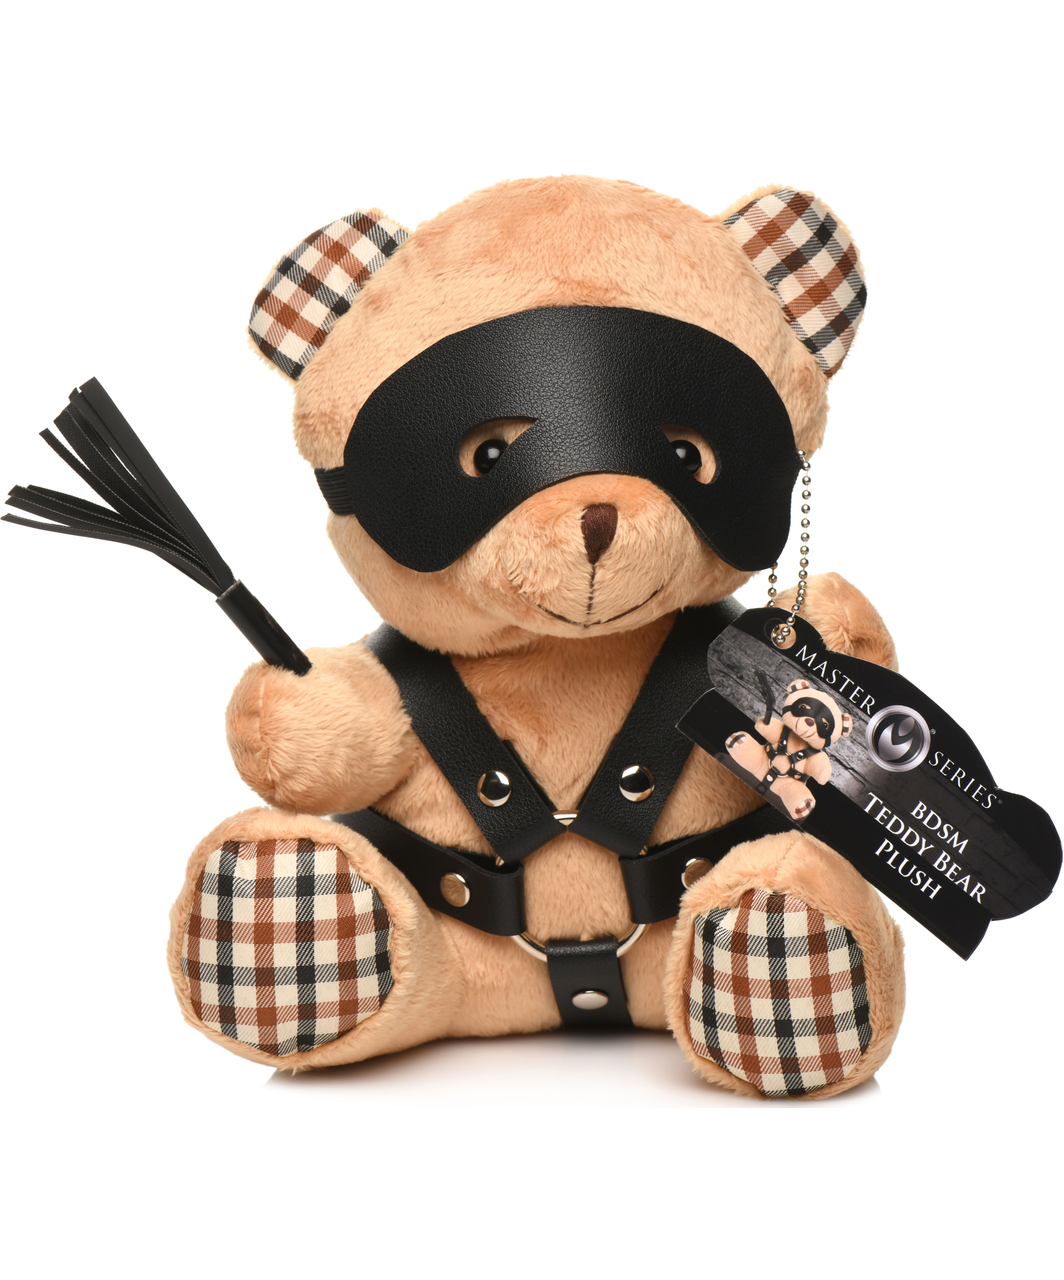 Master Series BDSM Kinky Teddy Bear kaisukaru